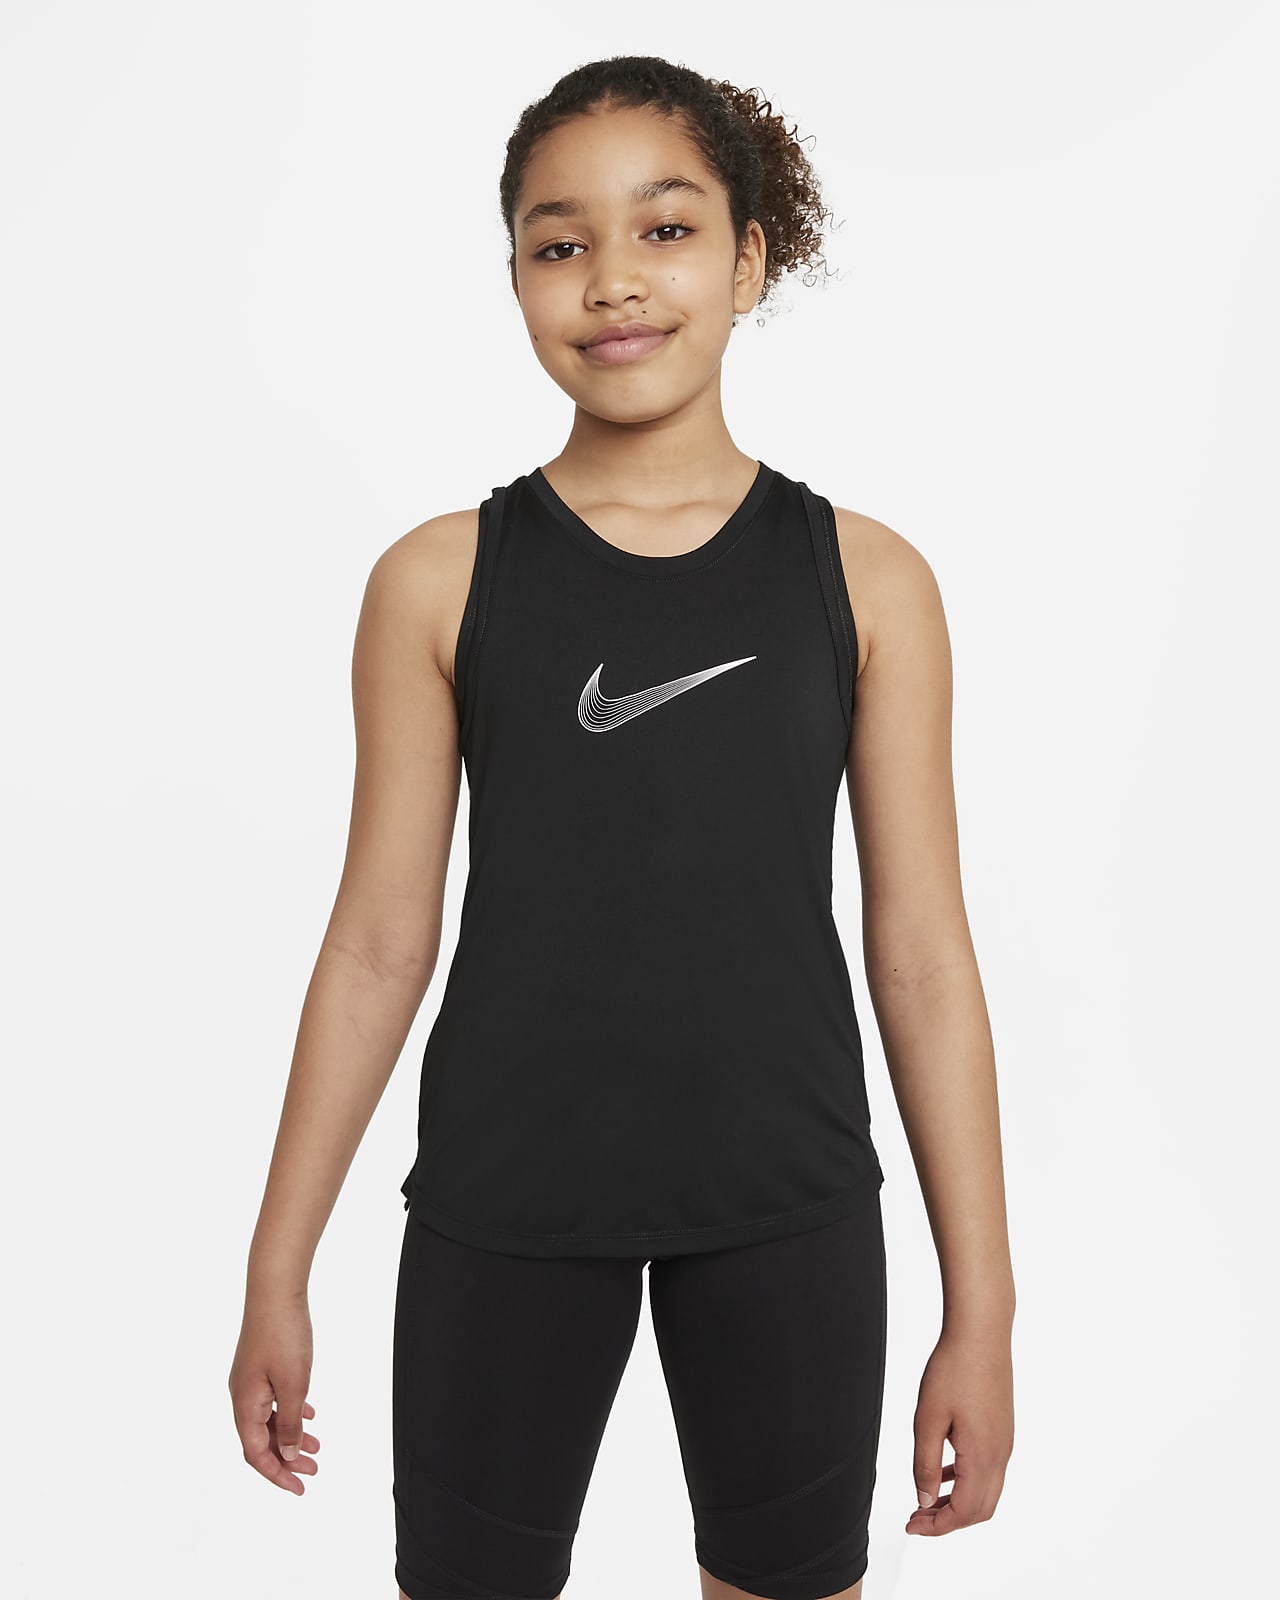 Nike One Older Kids' (Girls') Sports Bra. Nike LU